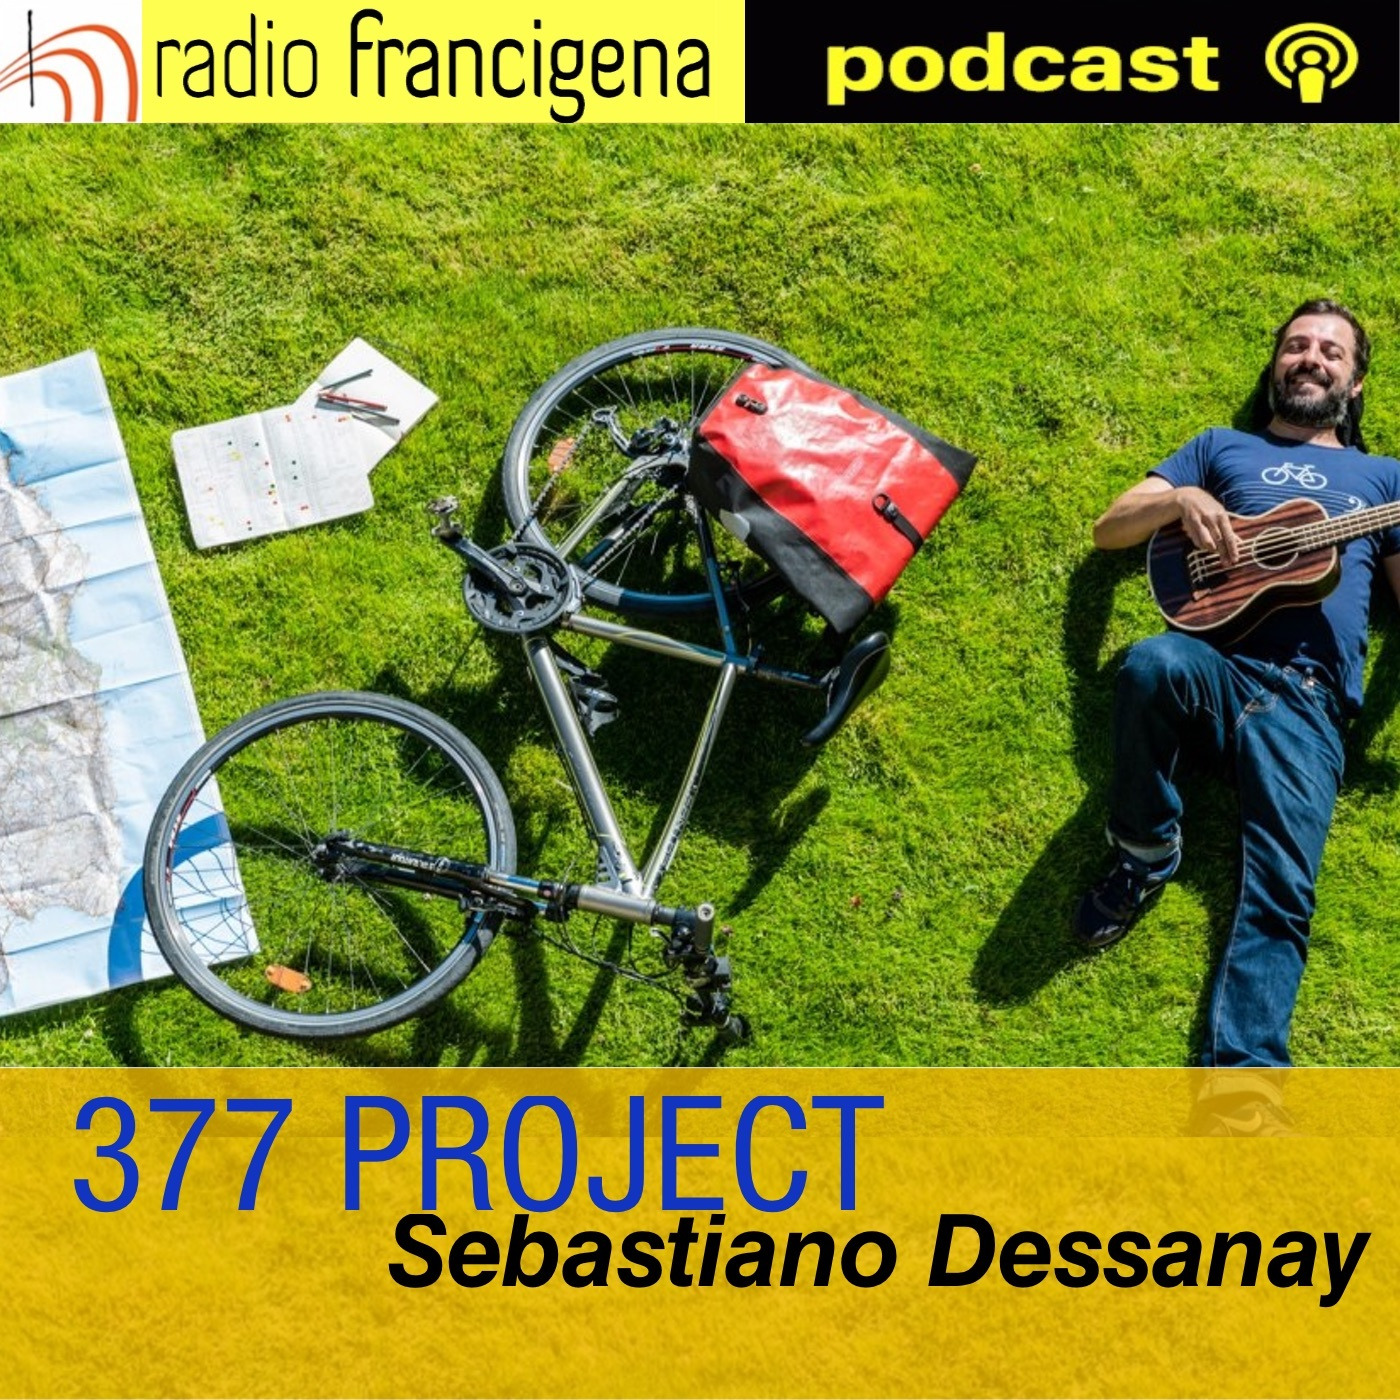 377 PROJECT - Sebastiano Dessanay - 08